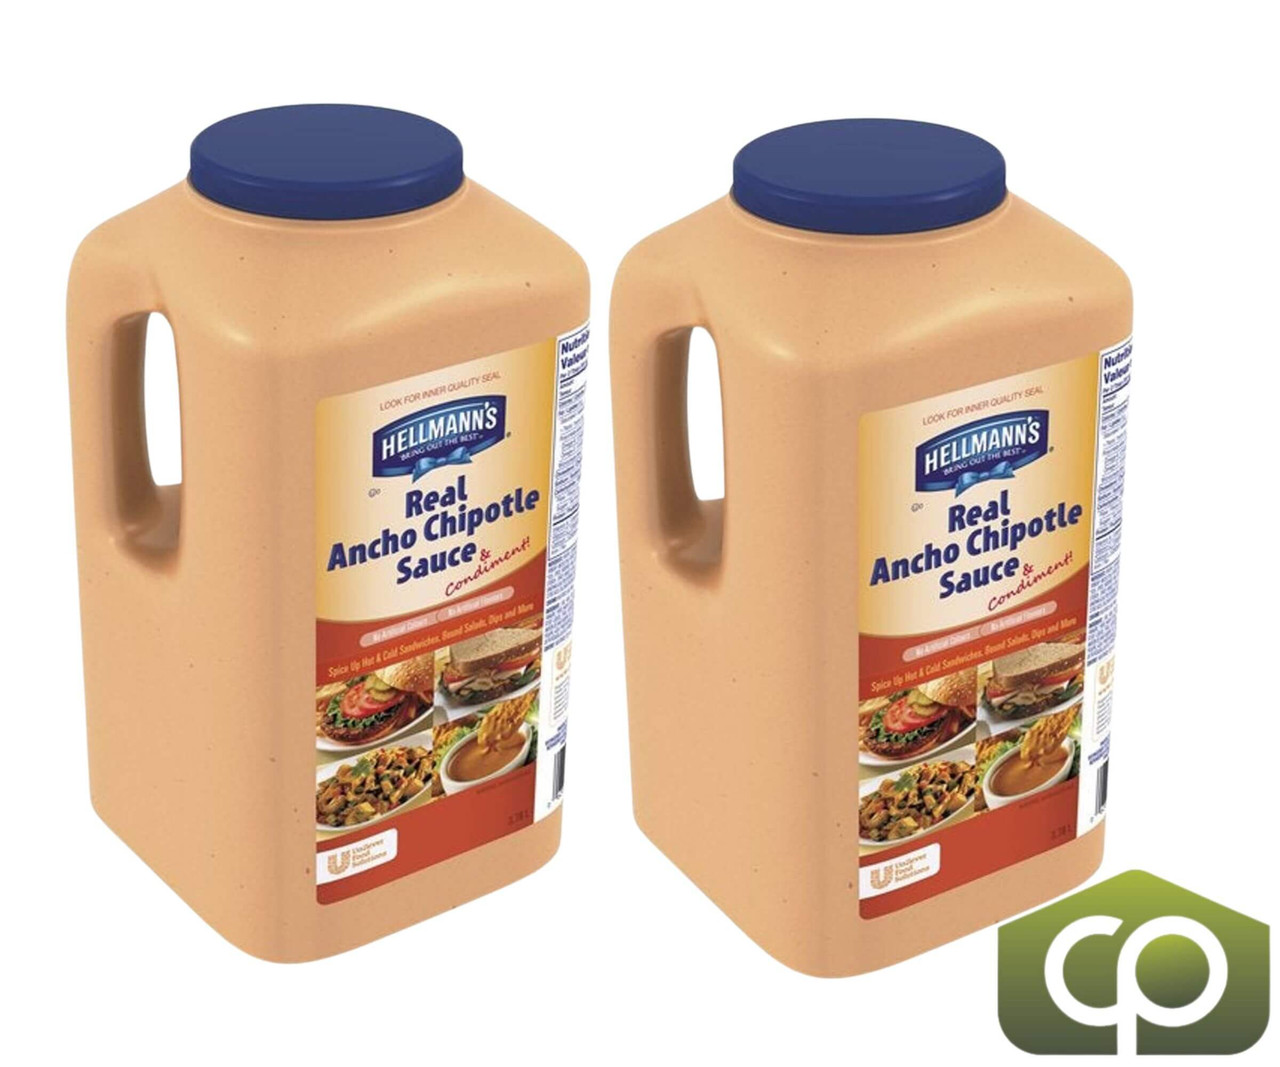 Hellmann's Real Ancho Chipotle Sauce | 3.8L/Unit, 2 Units/Case